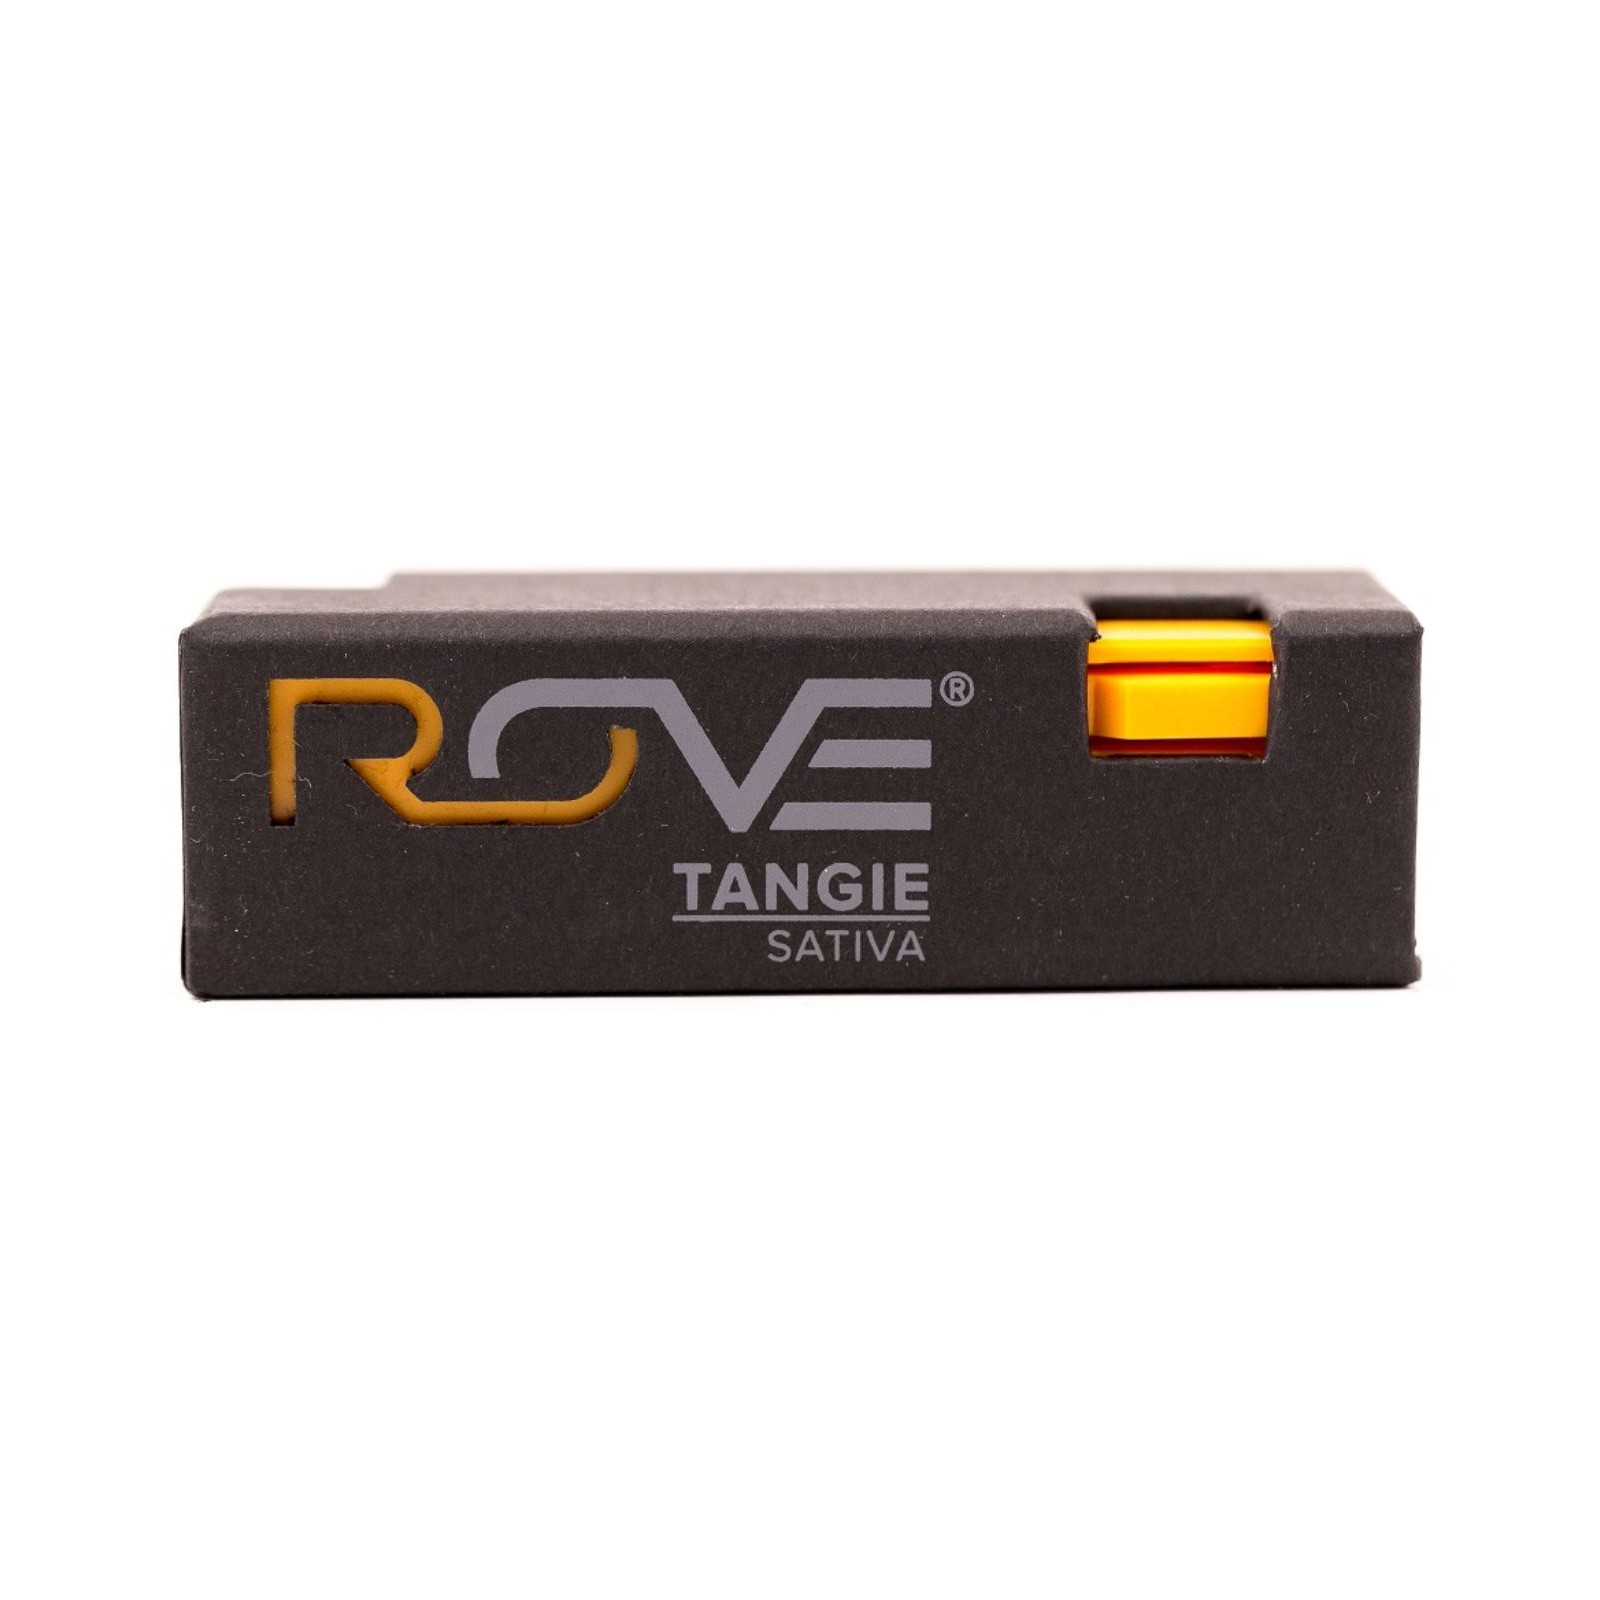 Cartridges Rove Tangie Sativa